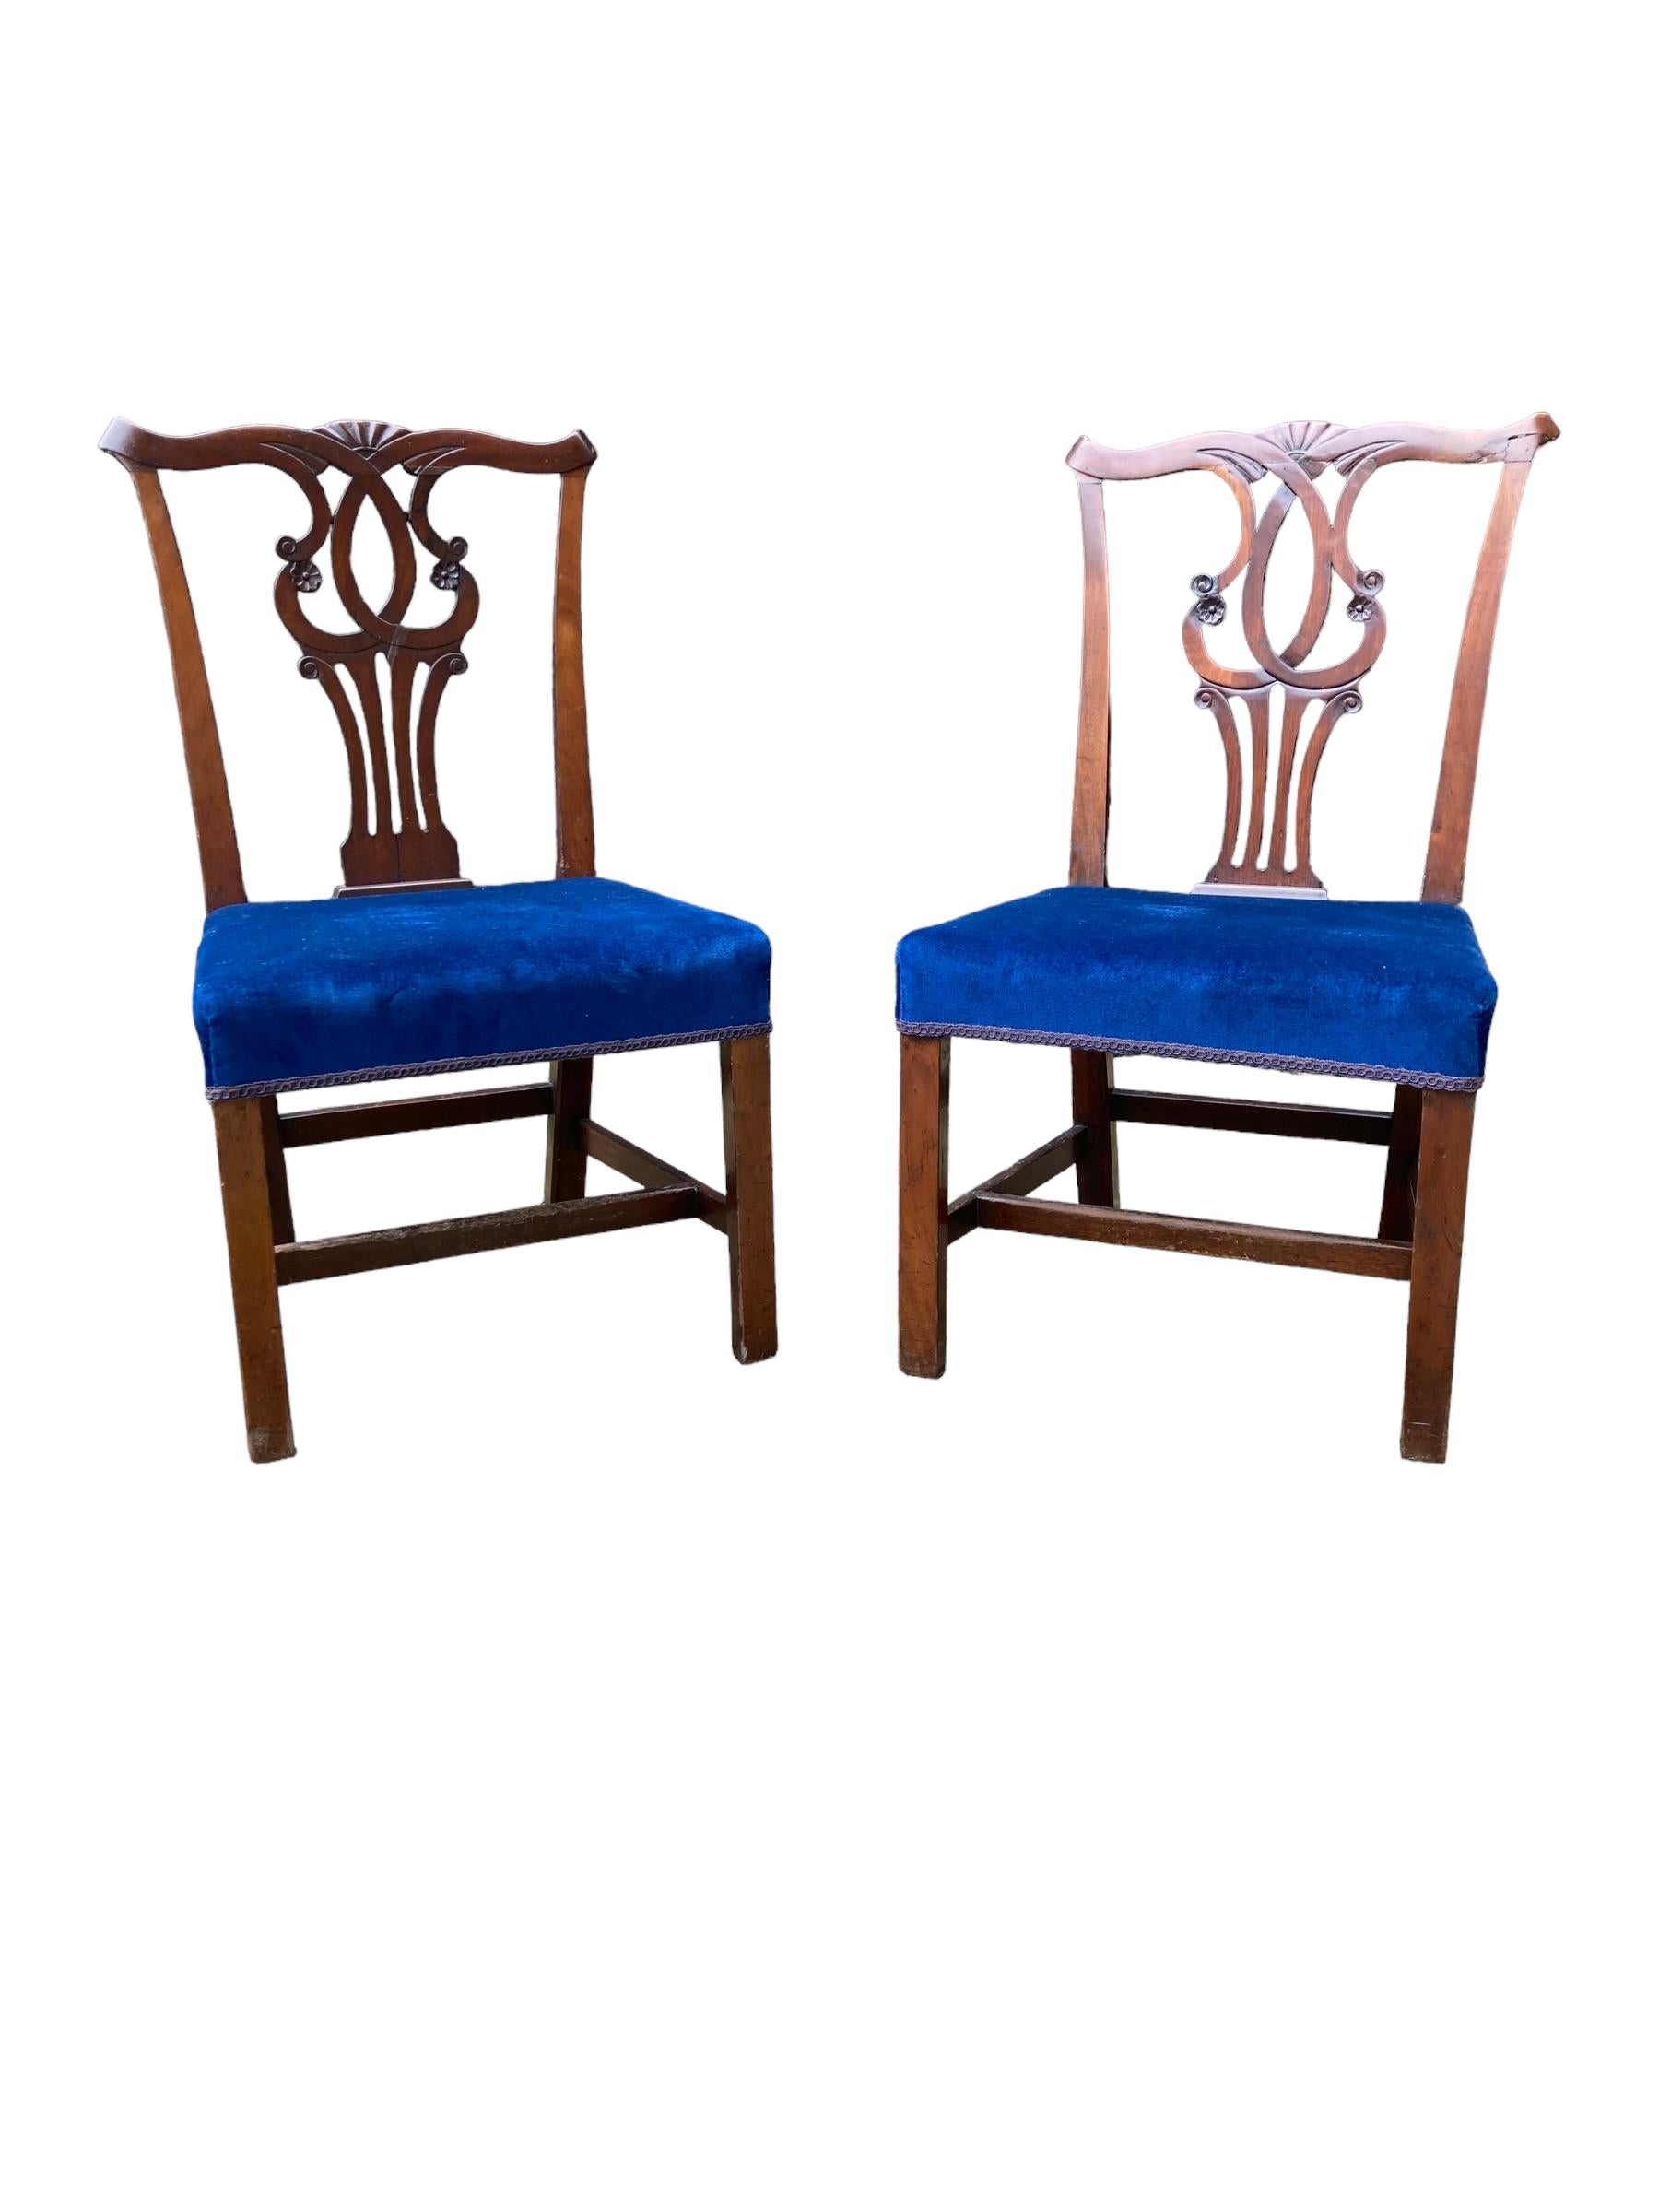 Une paire de chaises de salle à manger édouardiennes de style Chippendale en acajou. Remeublé dans un tissu bleu profond semblable à du velours. Chaises très solides et ornées. L'une des chaises a subi une réparation professionnelle mais mineure au